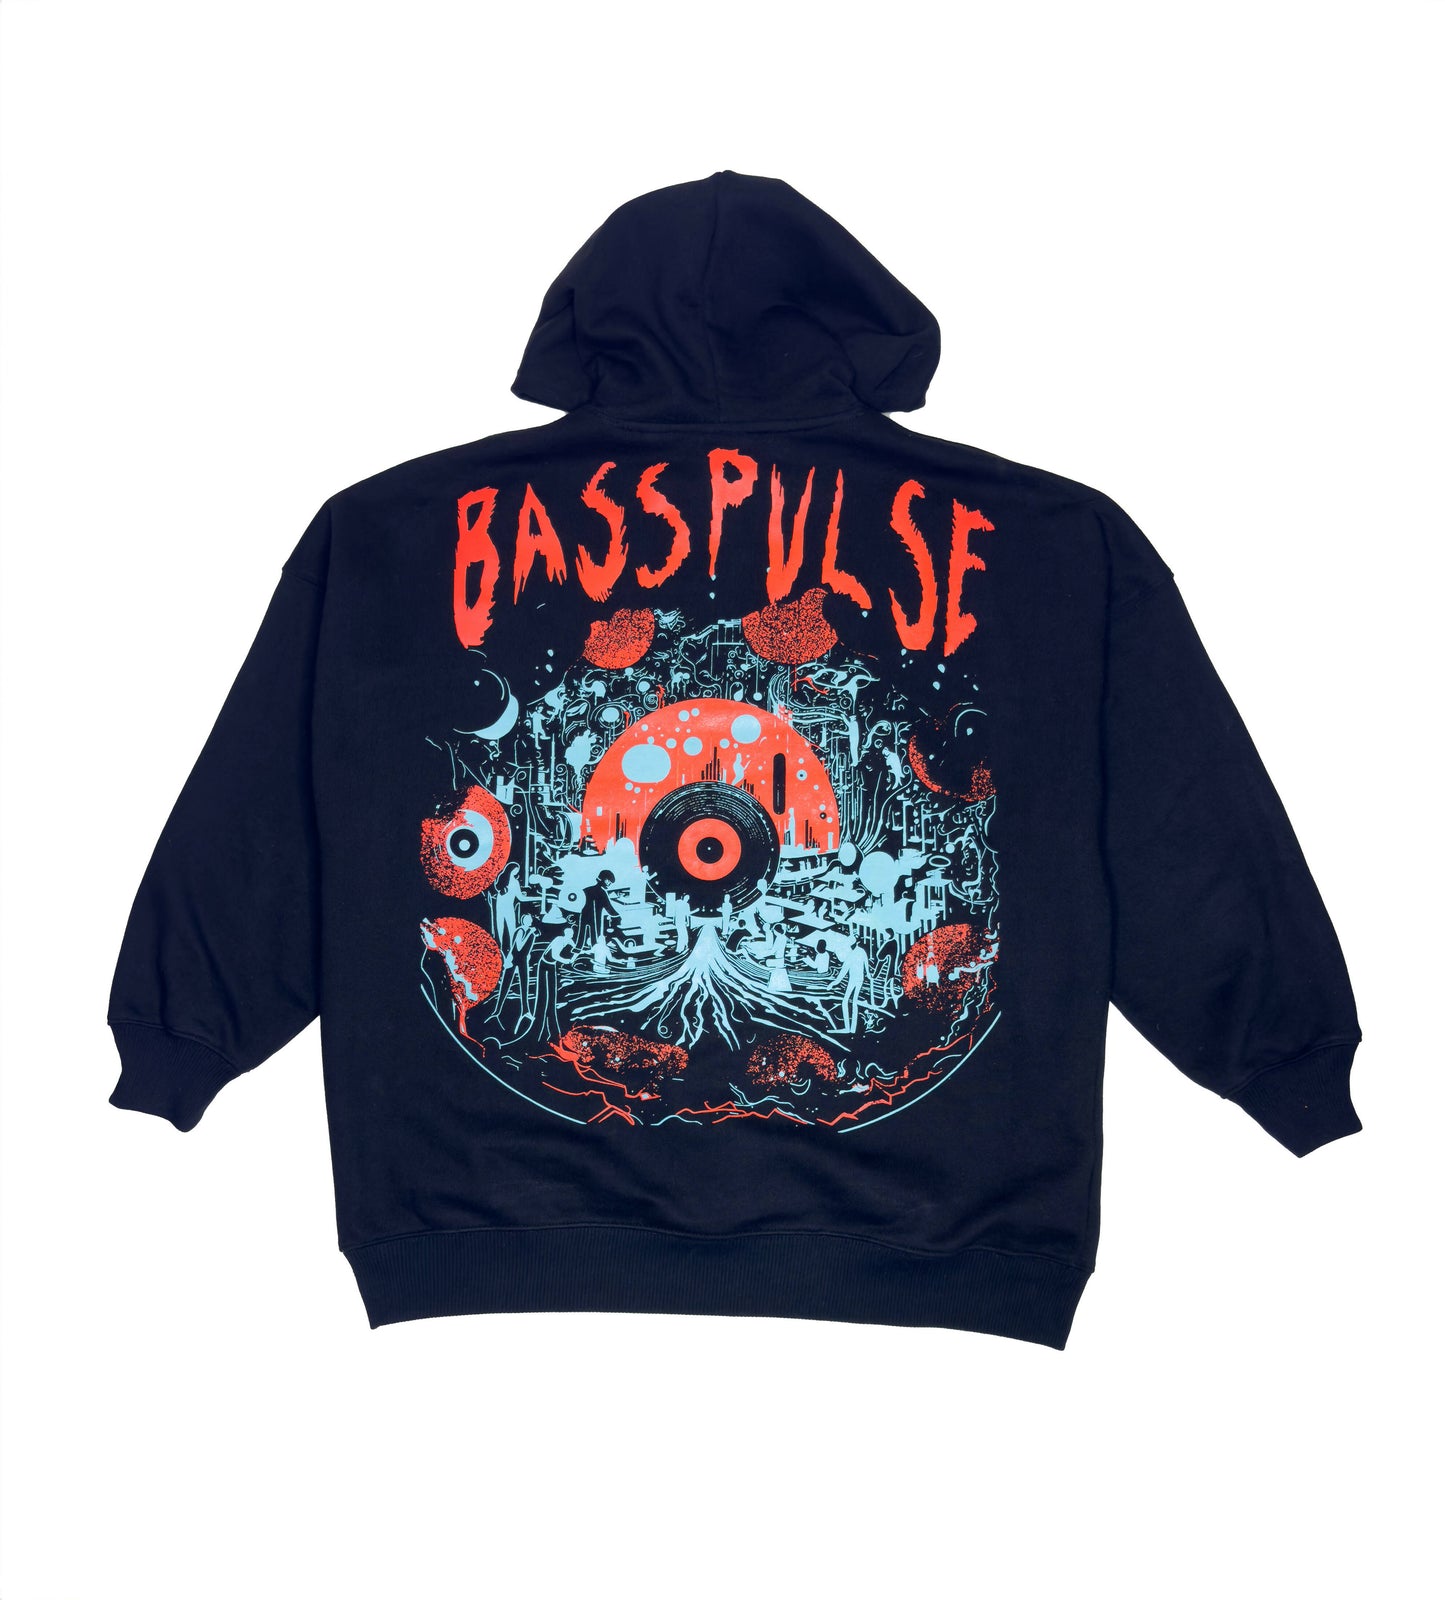 Basspulse Hoodie